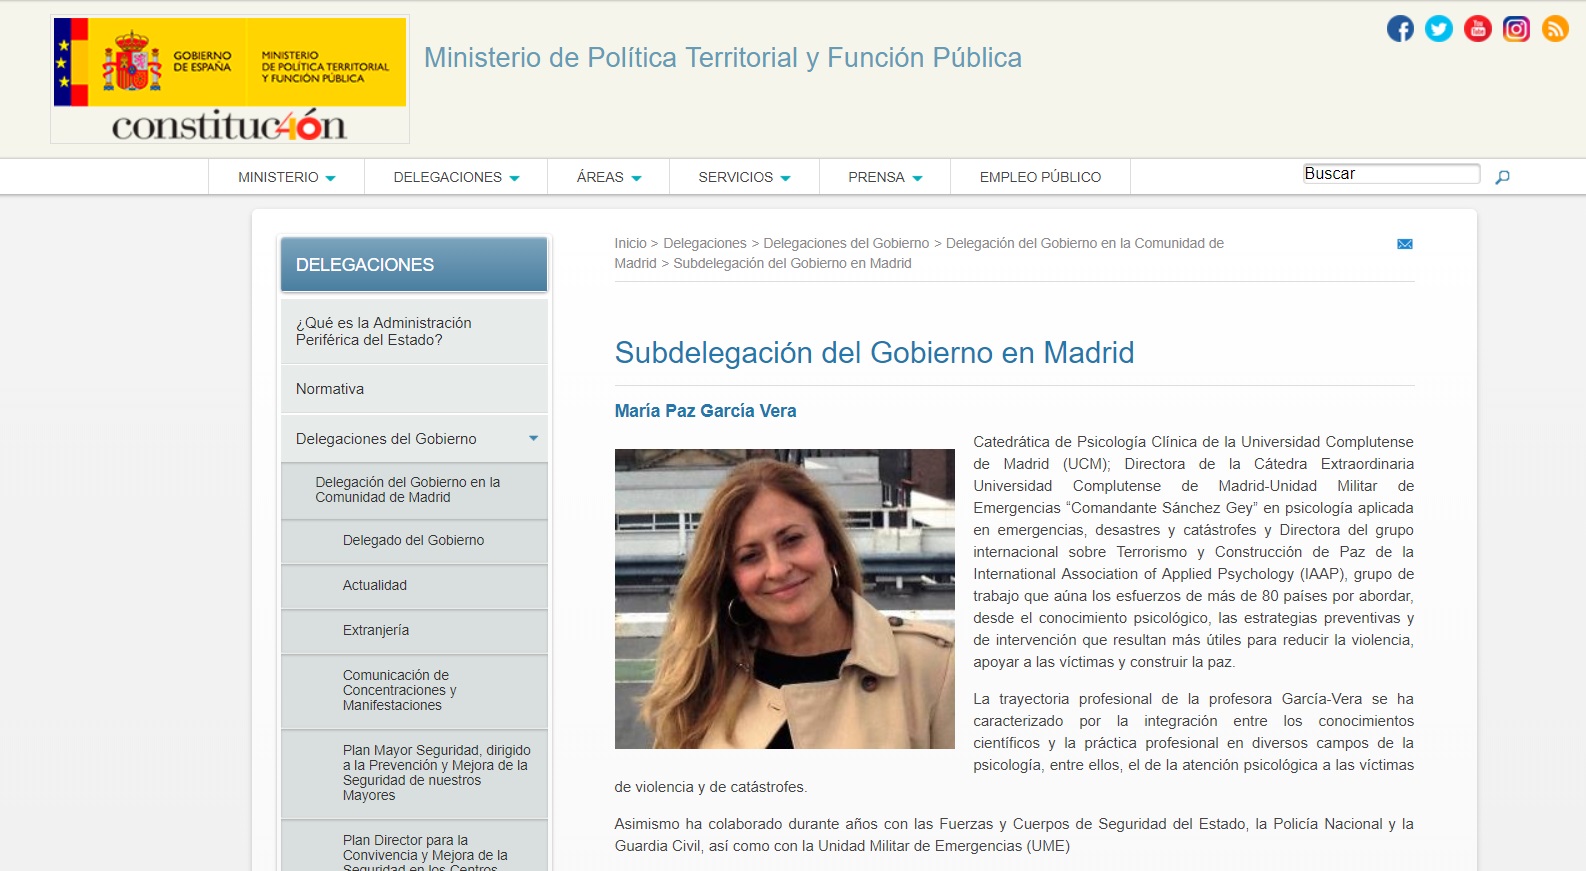 La Prof.ª María Paz García Vera nombrada nueva subdelegada del Gobierno en la Comunidad de Madrid